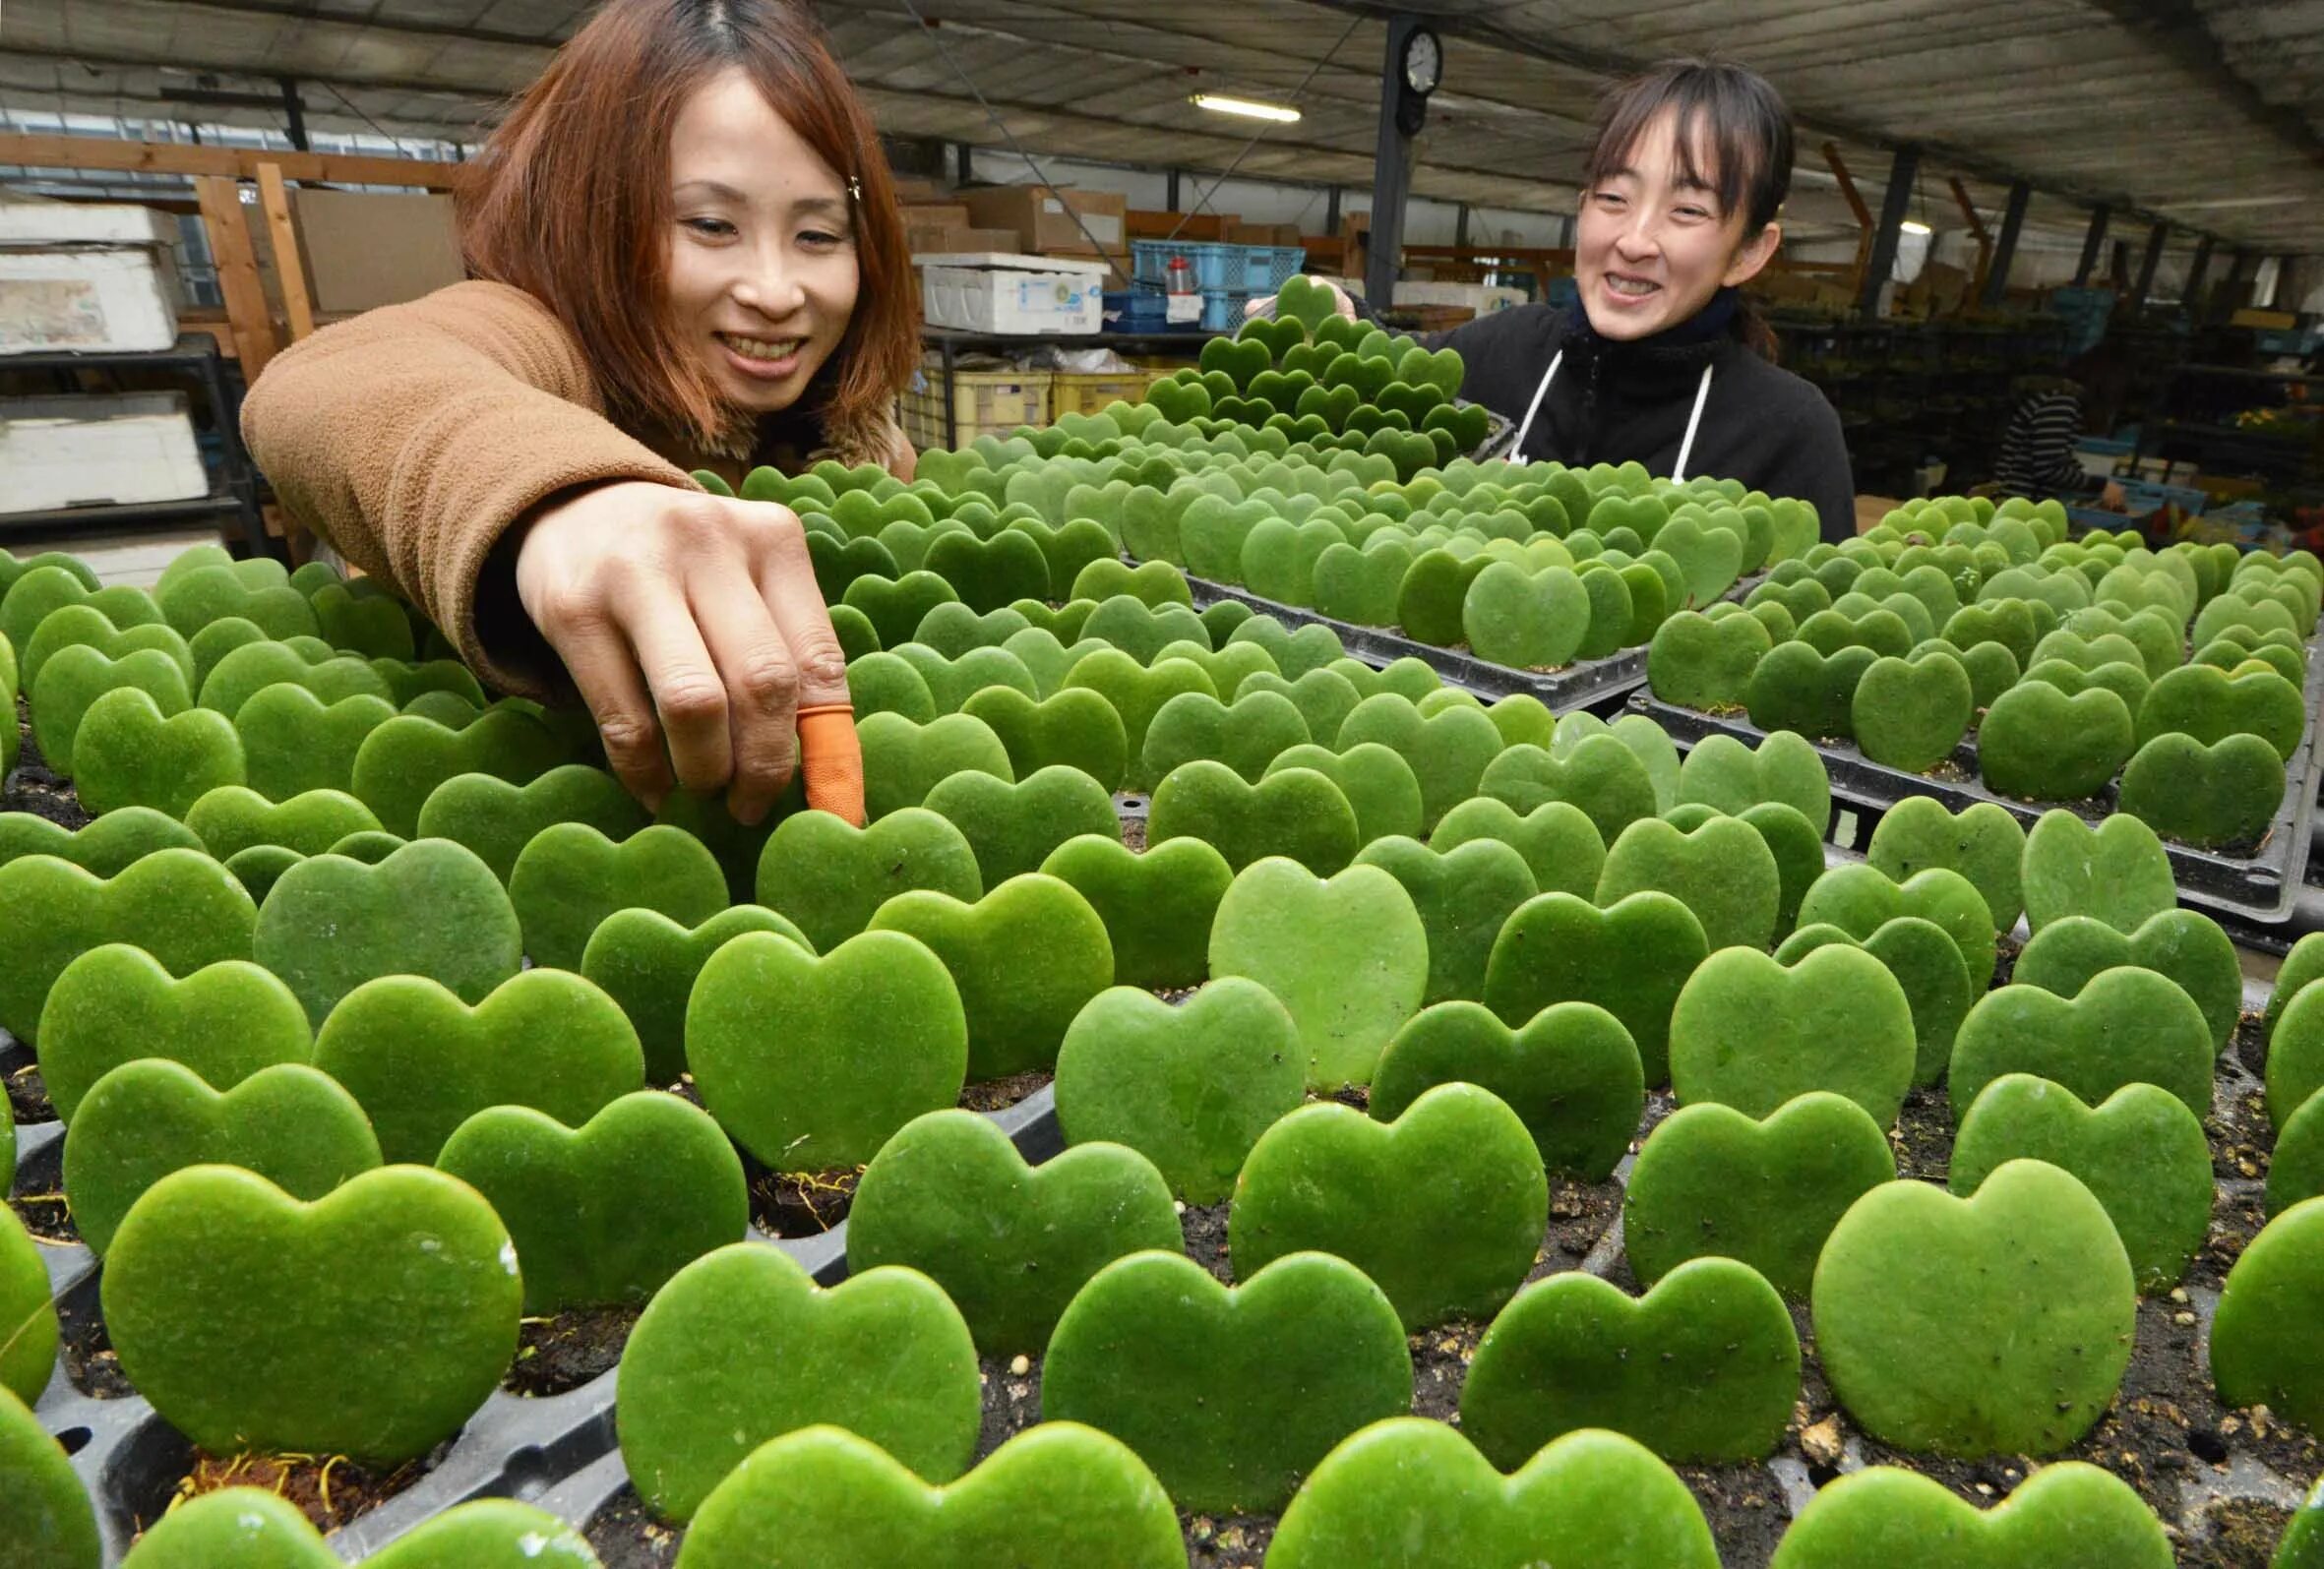 Включи картинки хаги. В Японии выращиваю овощи. Выращивание овощей в Японии. Японец выращивает овощи. Хаги ваги игрушка зеленый.